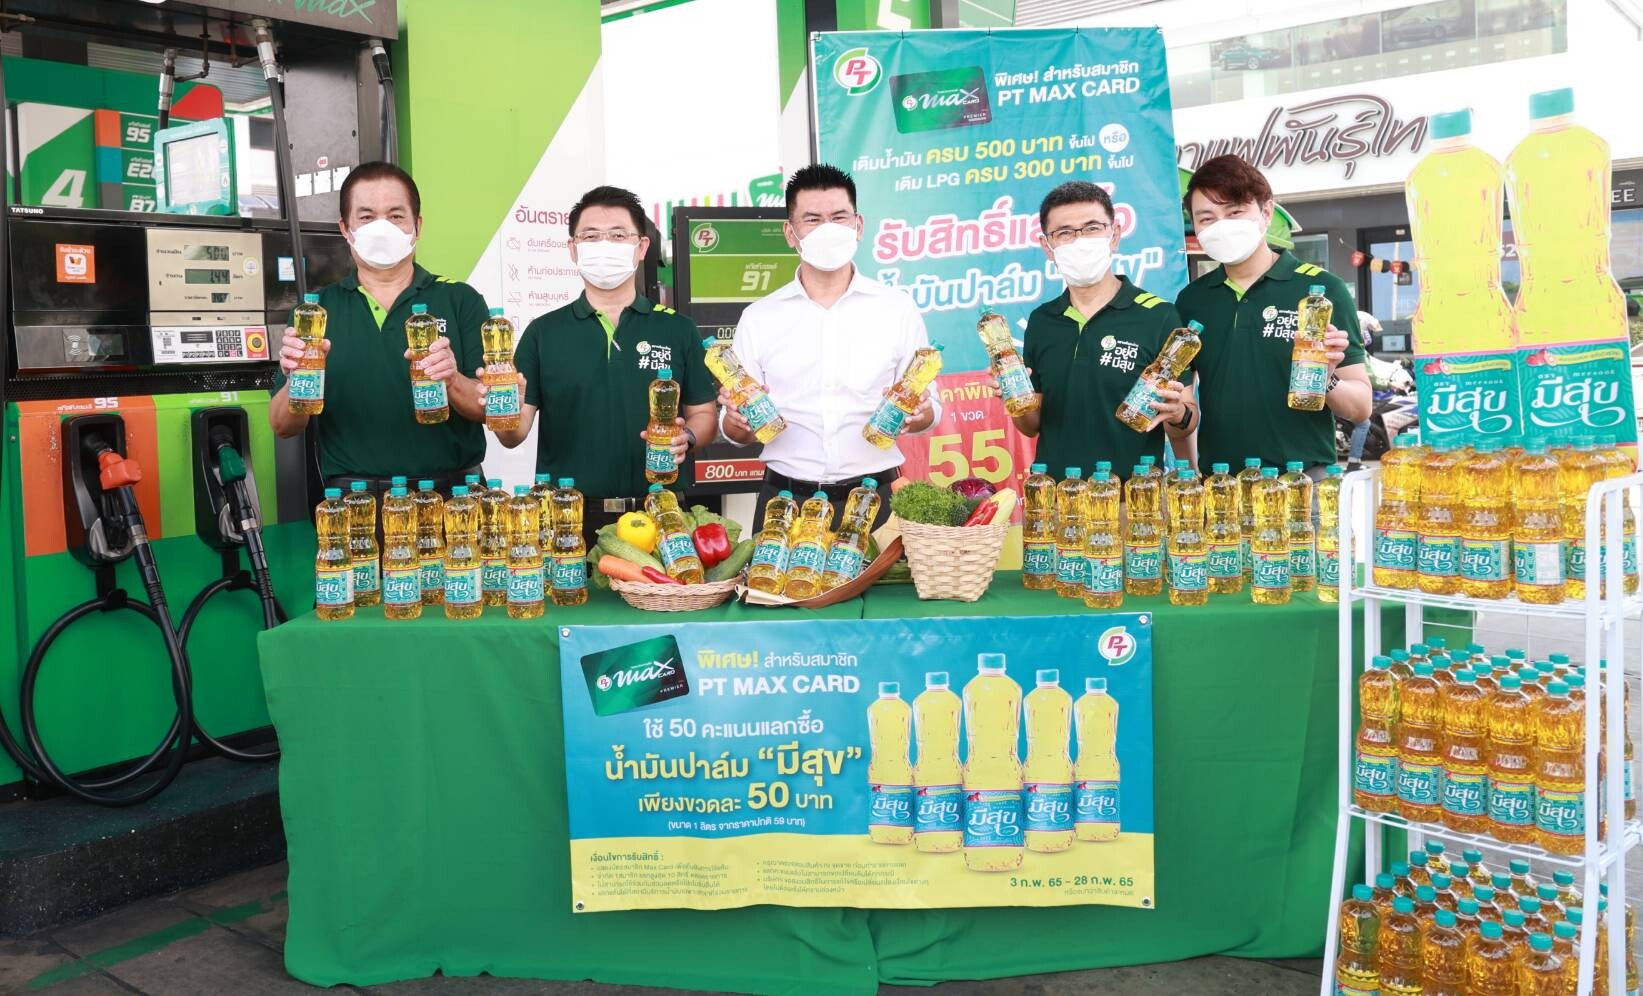 PTG เปิดแคมเปญช่วยลดค่าครองชีพคนไทย เติมน้ำมันแลกซื้อน้ำมันปาล์ม "มีสุข" ราคาสุดพิเศษ